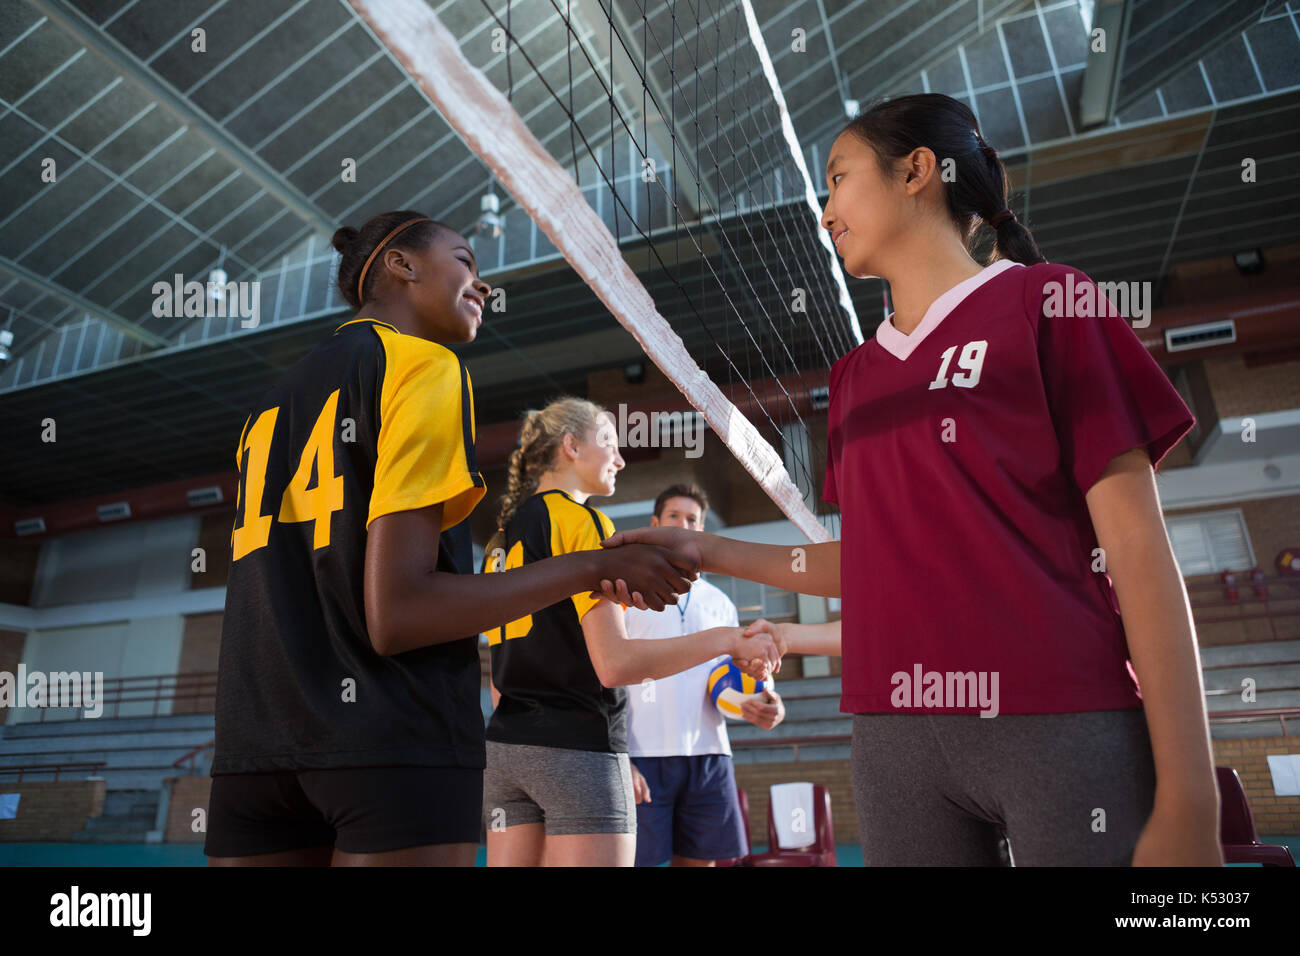 Lächelnd weibliche Spieler Hände schütteln Nach dem Match in der Volleyballplatz Stockfoto